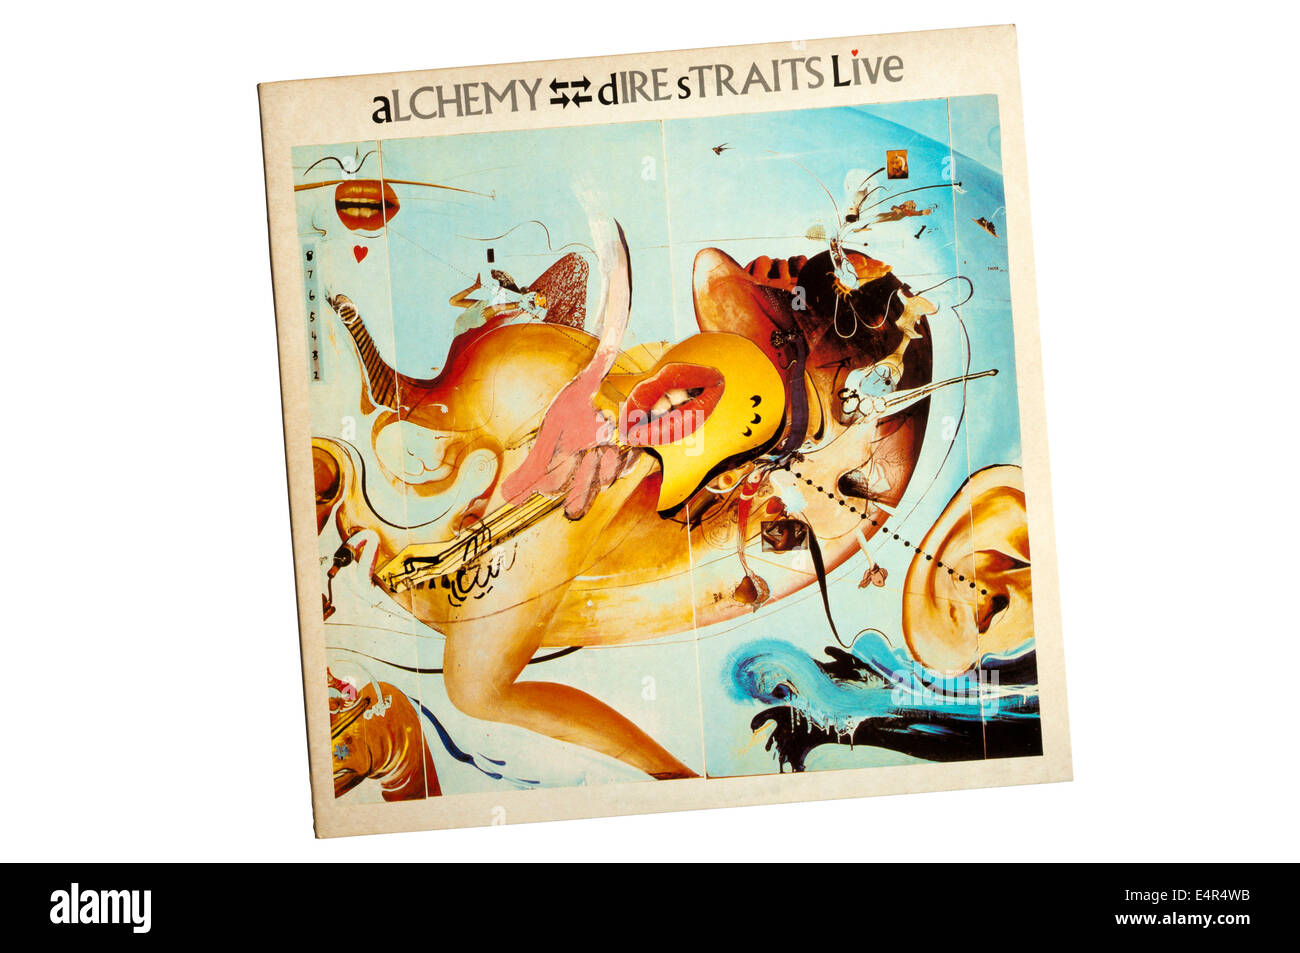 Alchemie: Dire Straits Live war ein Doppel-Album von britischen Rockband Dire Straits, im Jahr 1984 veröffentlicht. Erstes live-Album der Band. Stockfoto